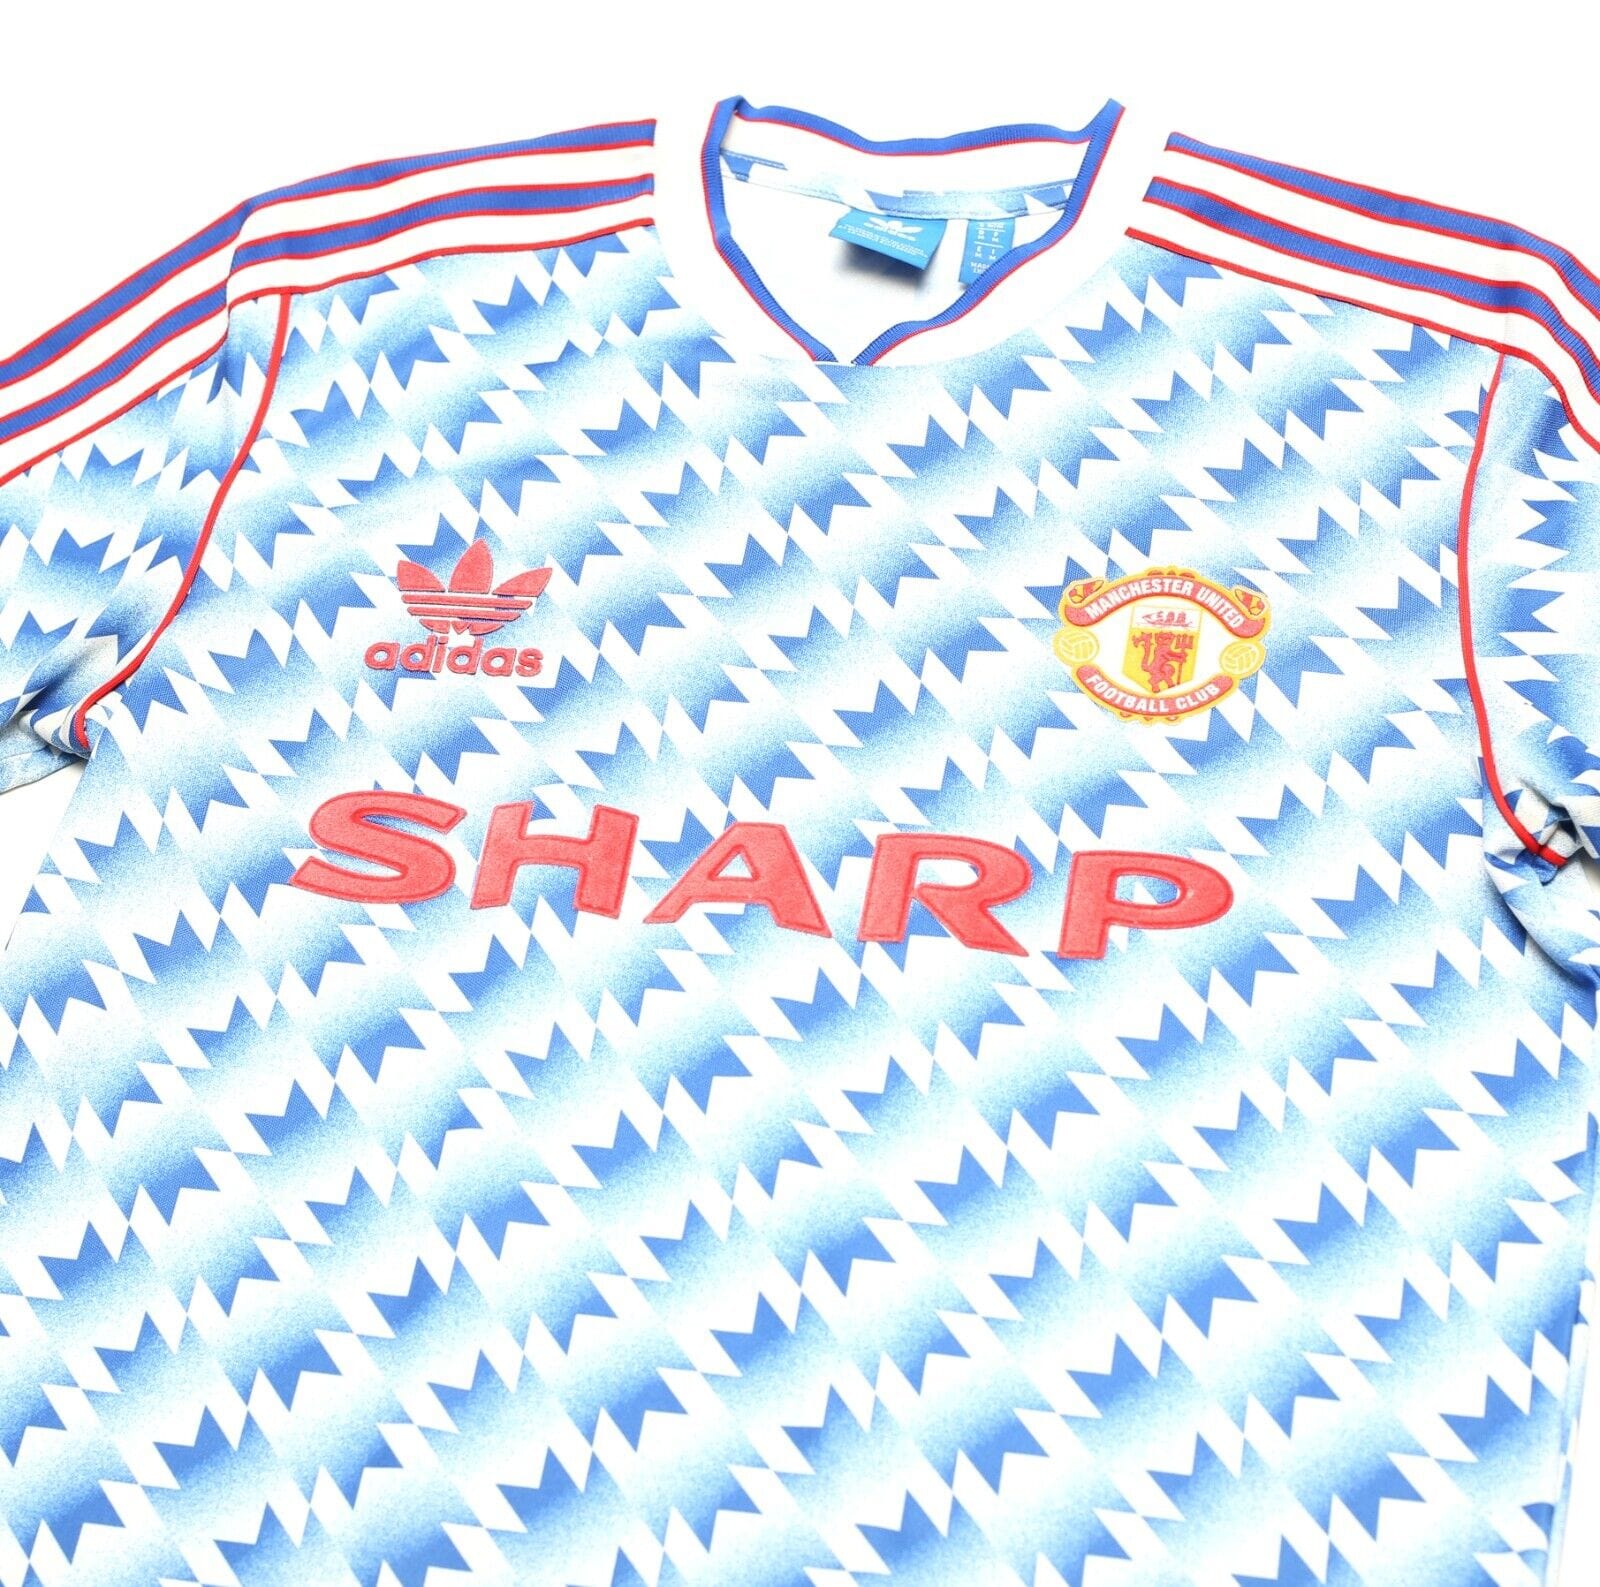 1990/92 MANCHESTER UNITED Retro adidas Originals Away Football